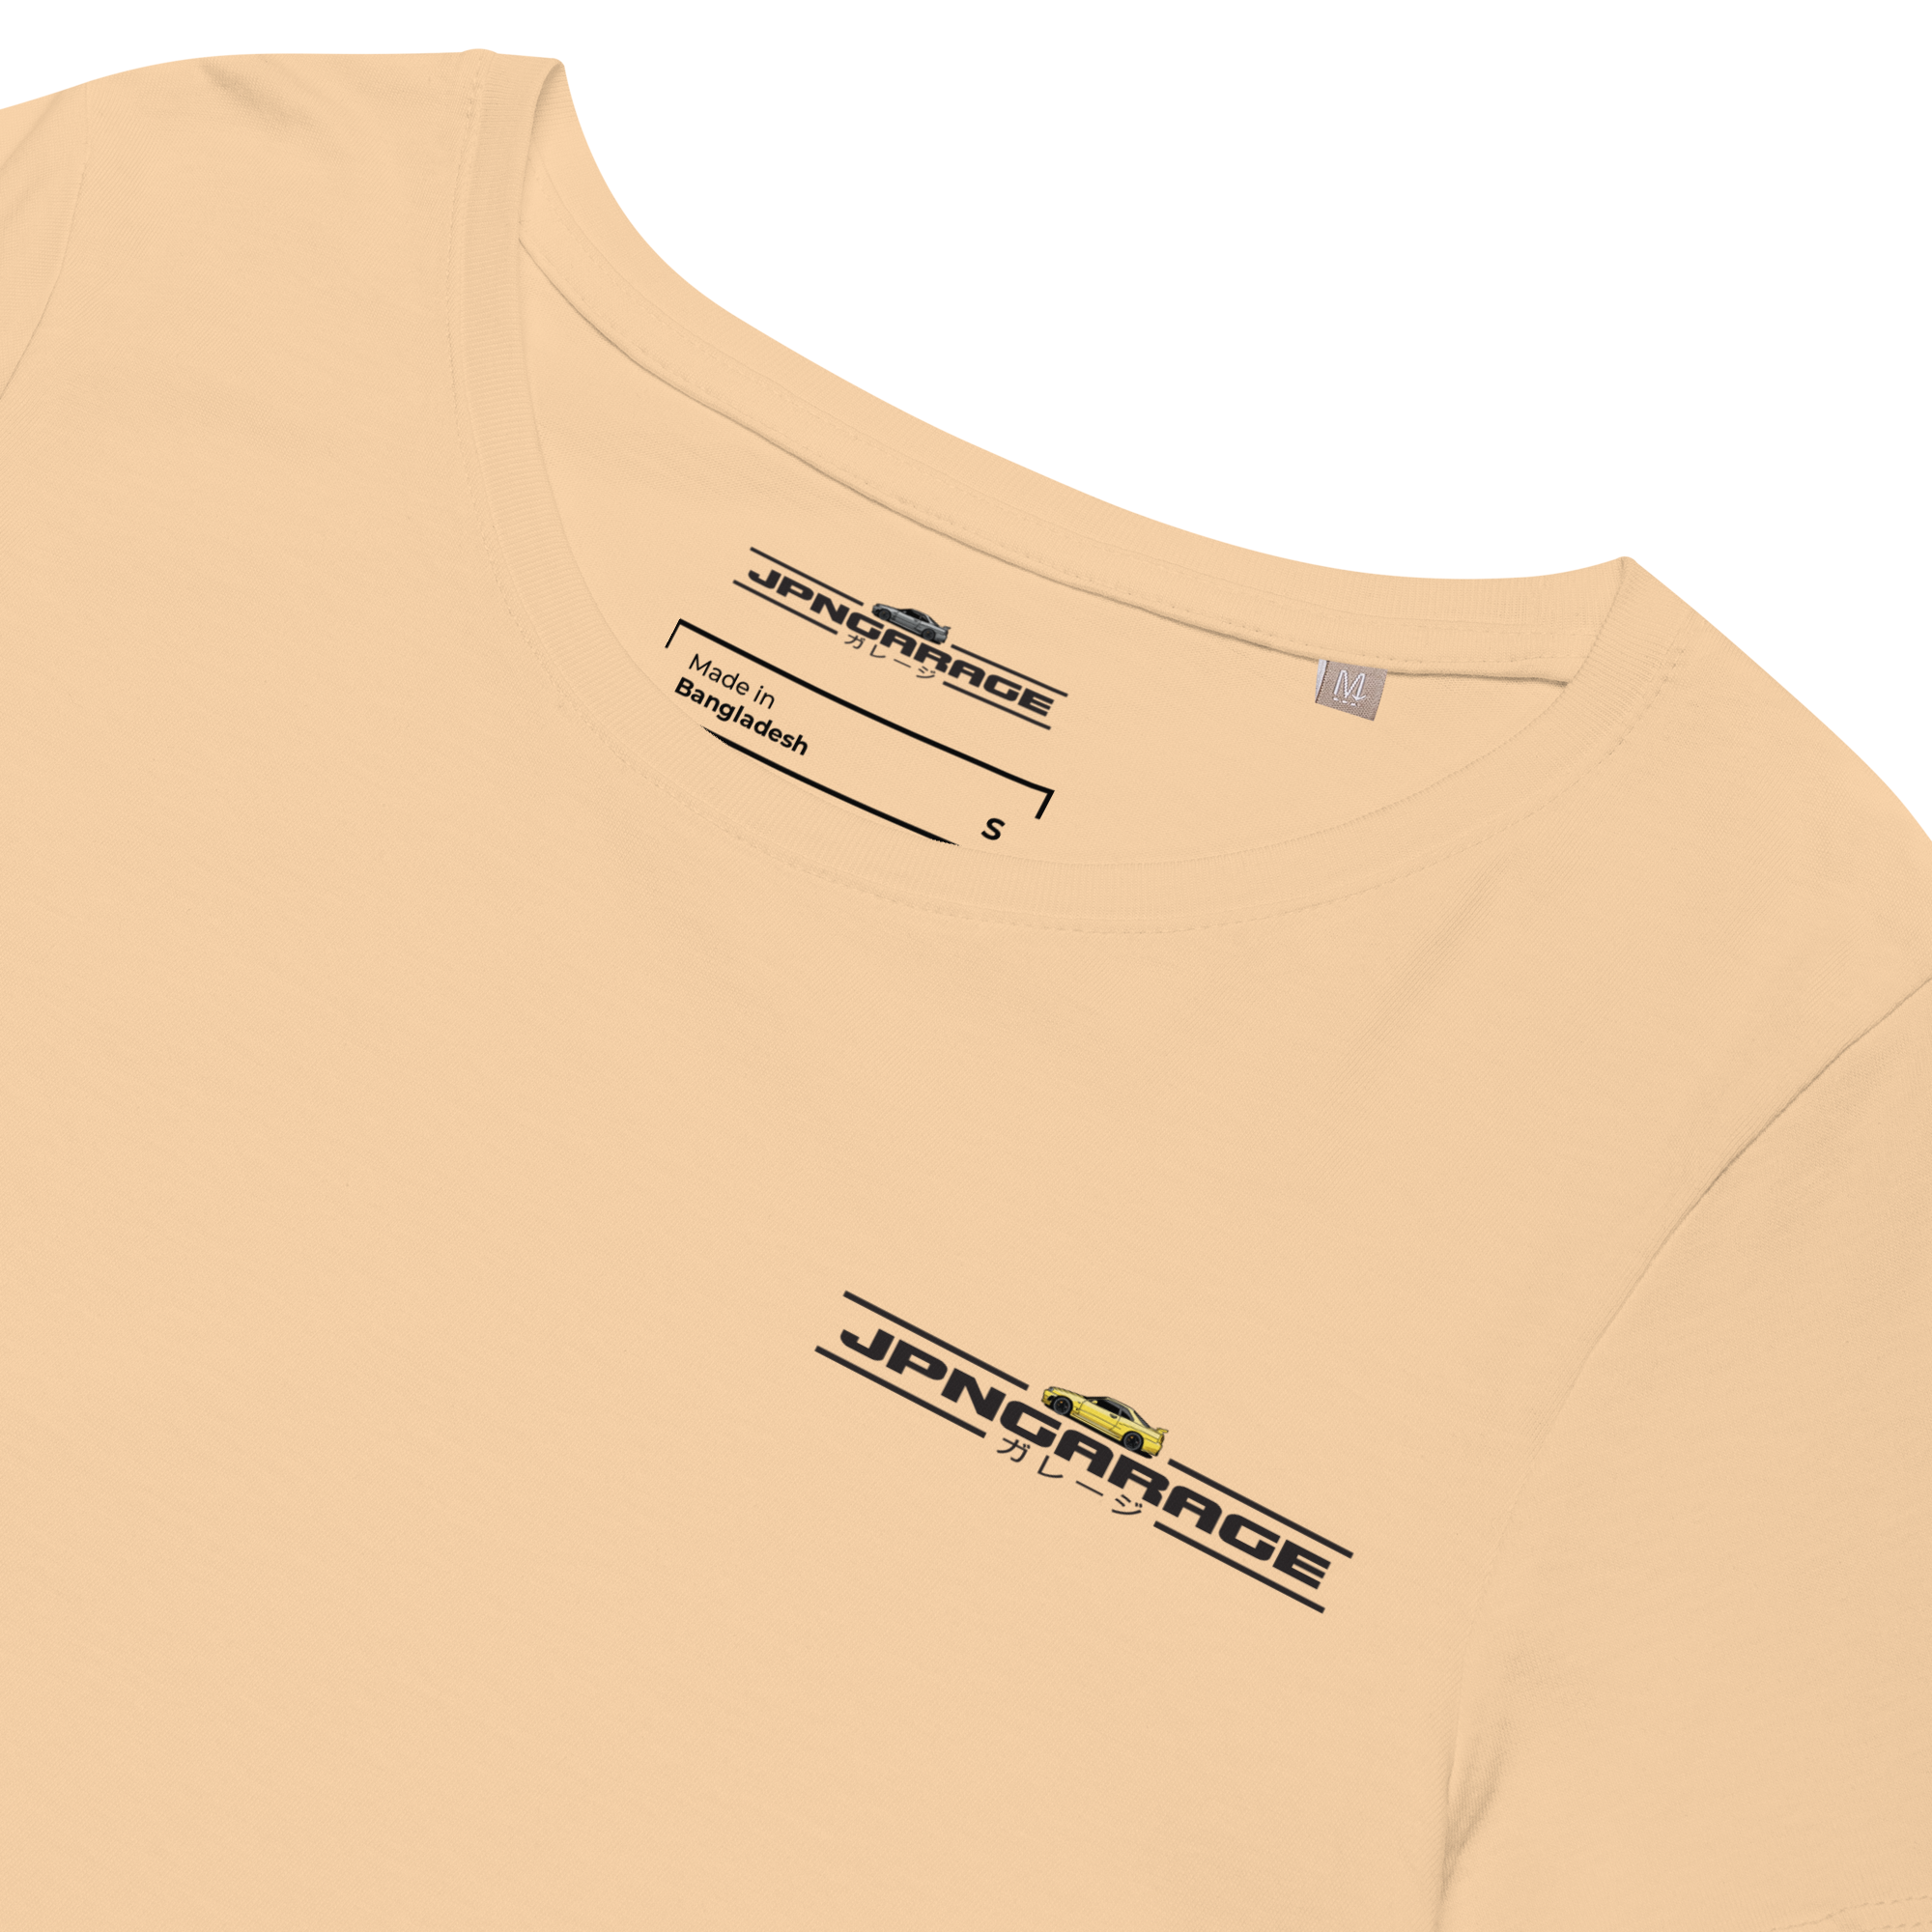 #JPNGarage GTR T-Shirt - #BNR34 Gelb Damen